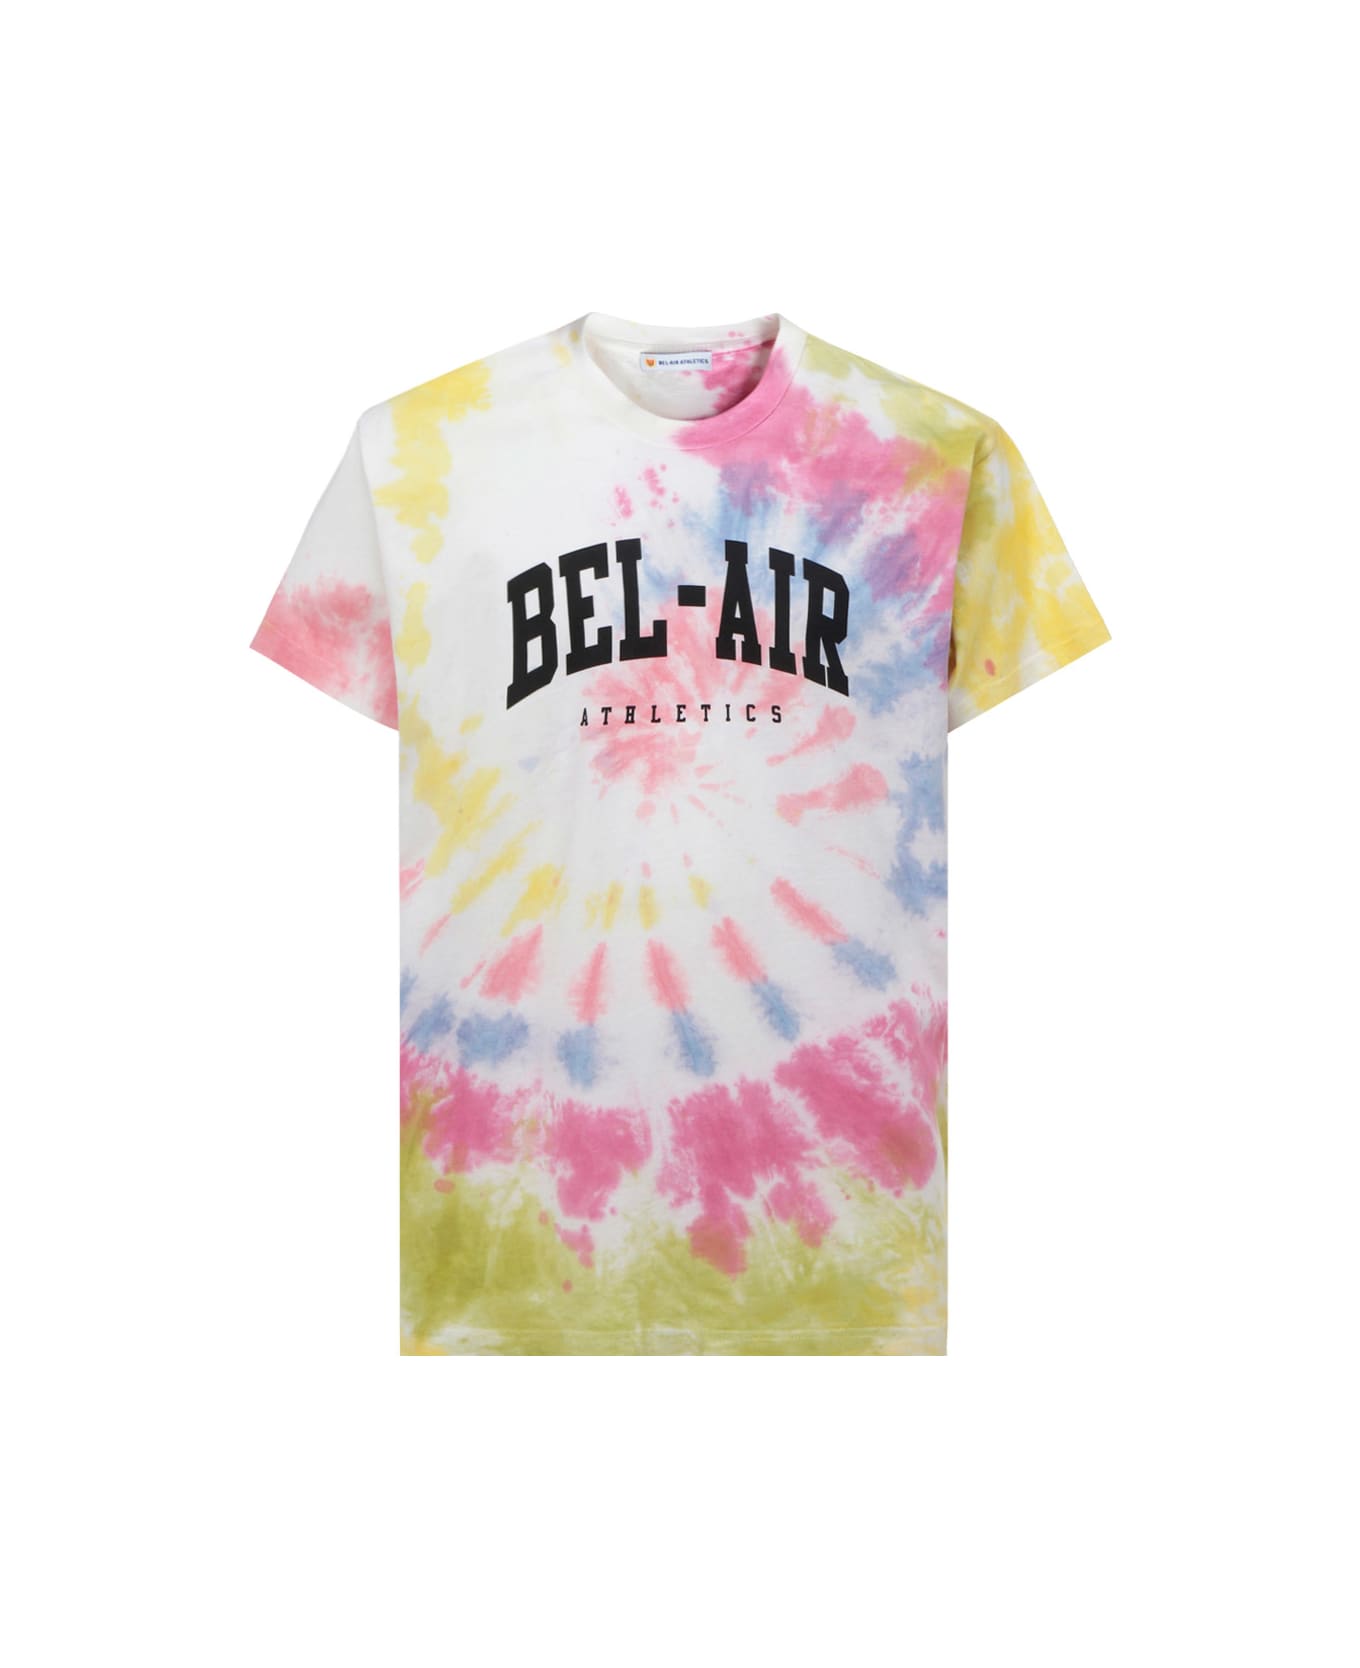 Bel-Air Athletics College T-shirt - Multicolor